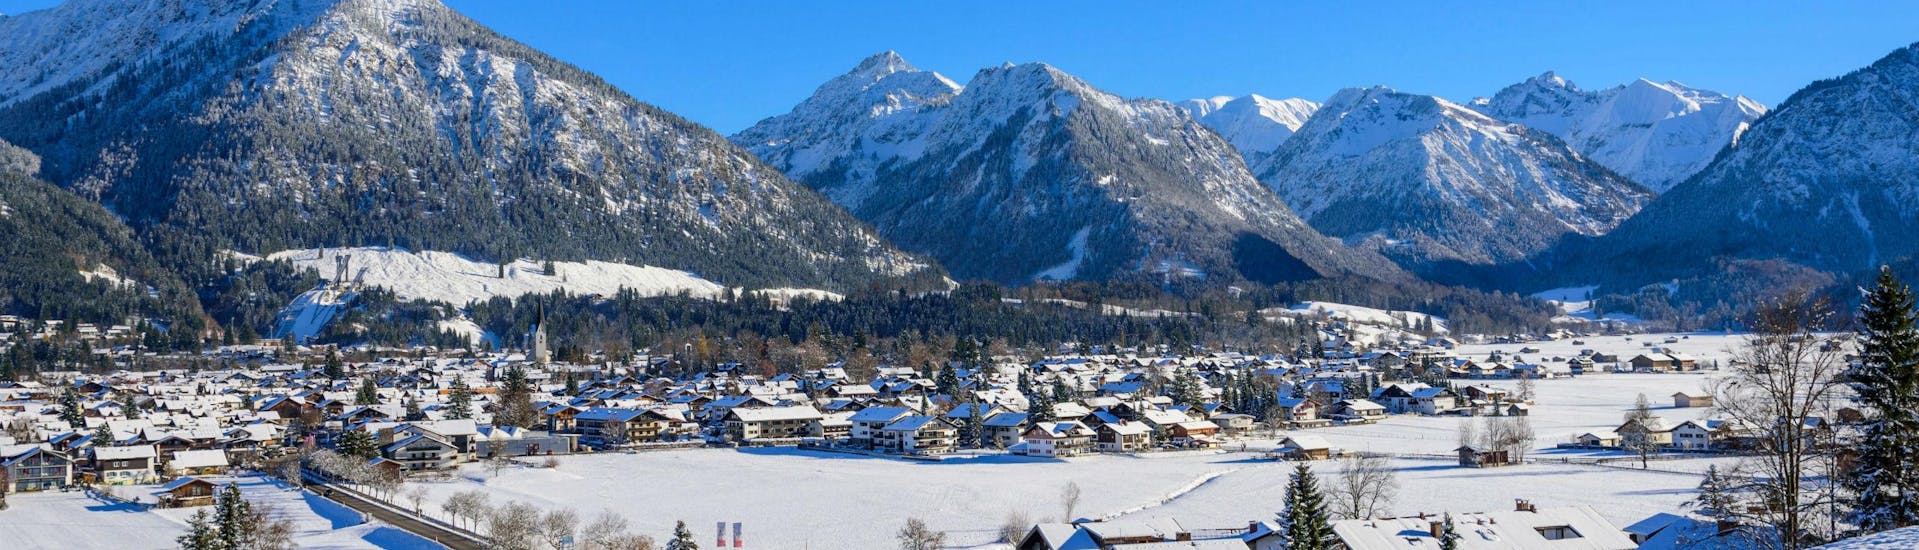 Blick auf das Nebelhorn im Skigebiet Oberstdorf, ein von den bayrischen Alpen umzingeltes Skigebiet in dem die örtlichen Skischulen eine Vielzahl an Skikursen anbieten. 